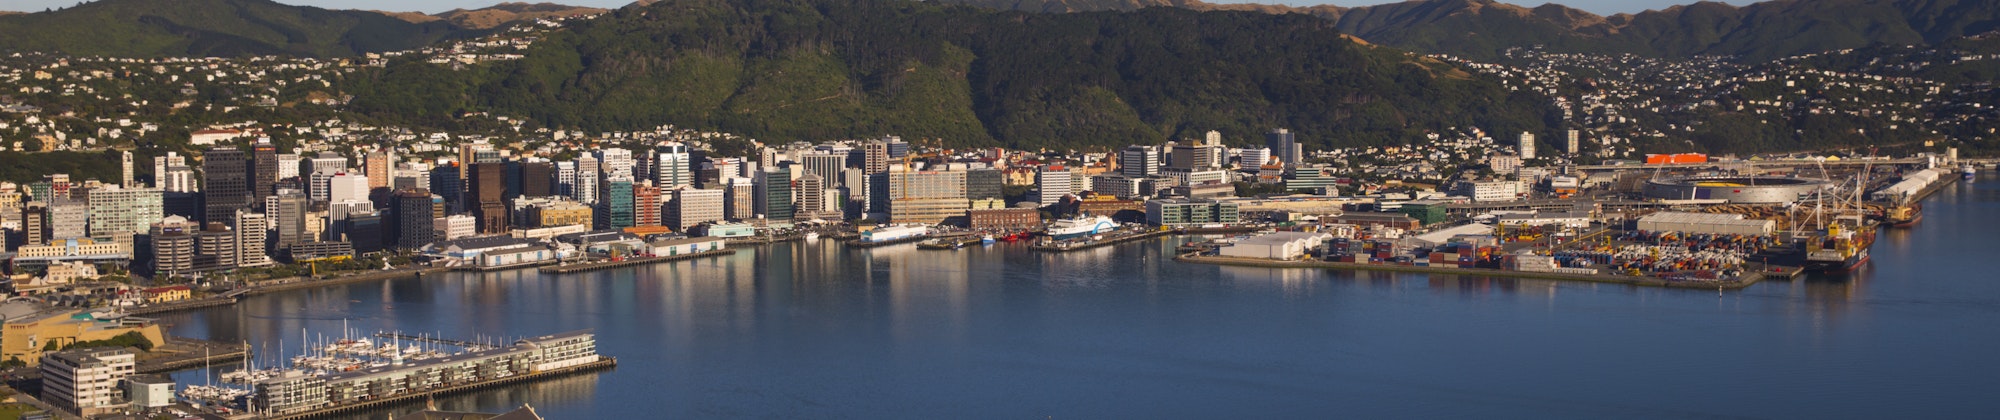 Wellington, New Zealand harbour